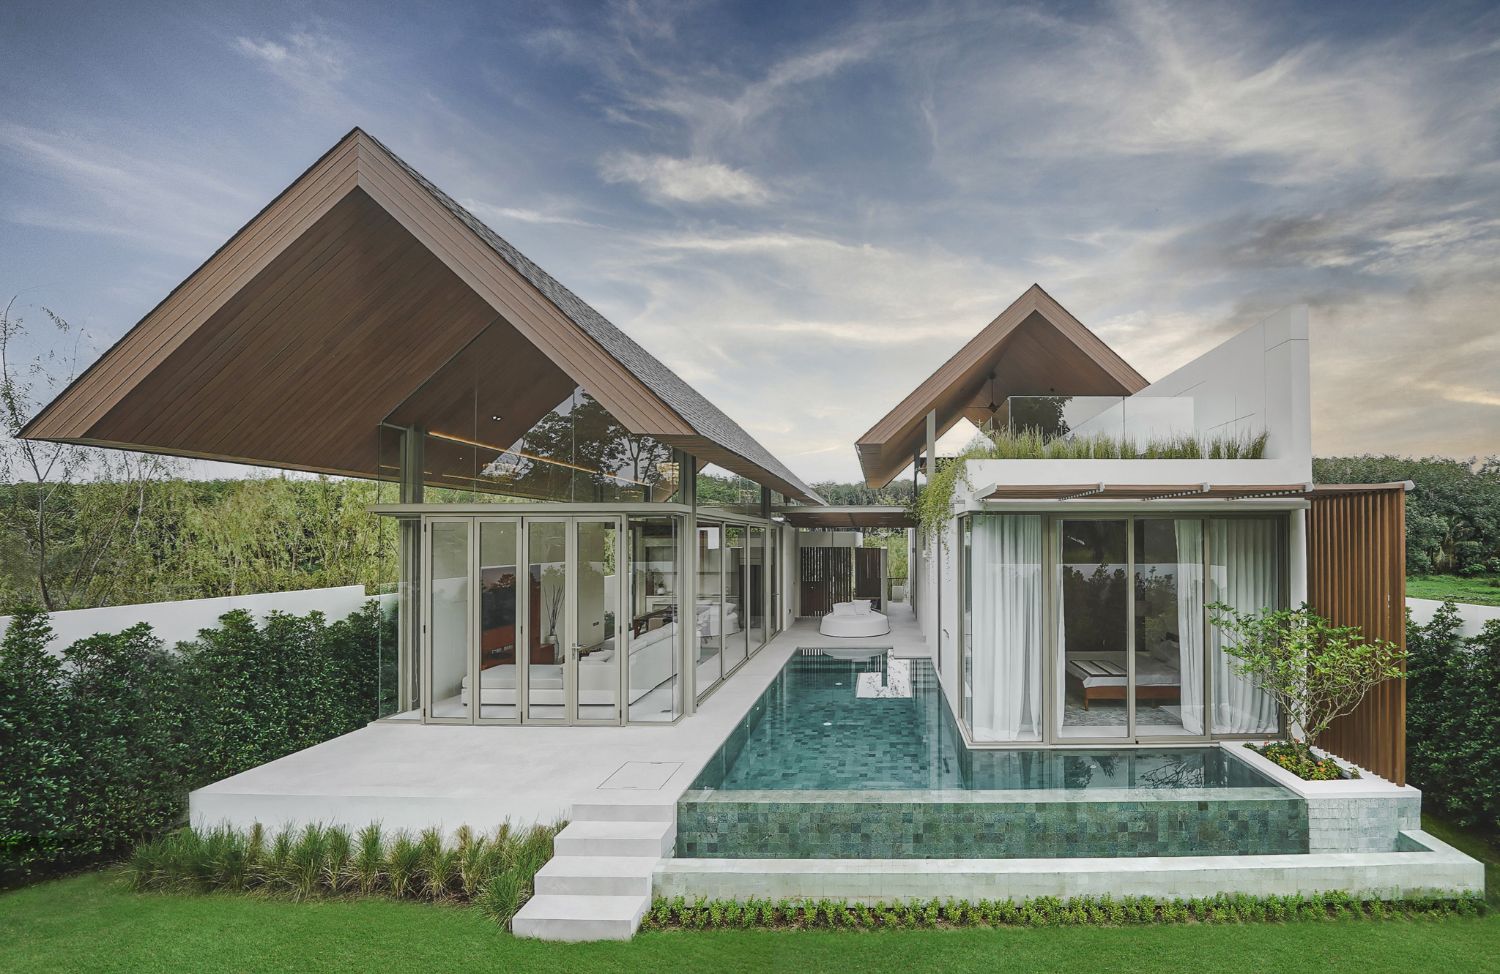 ✨Contemporary Heritage Architecture Design Private Pool Villa for Sales✨